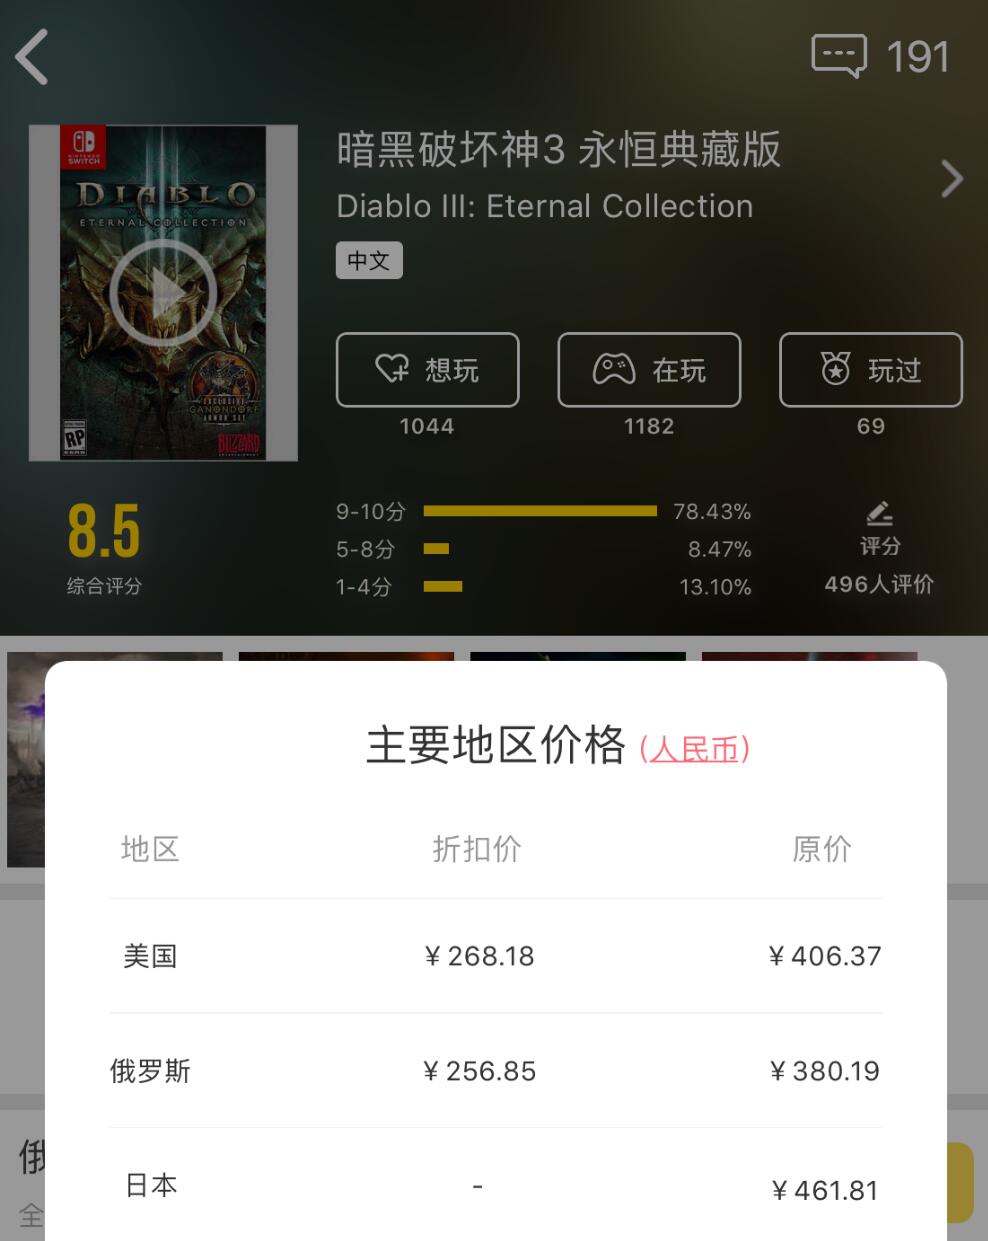 任天堂美服eShop商店开启Switch《暗黑破坏神3 永恒典藏版》限时优惠，购买游戏享优惠34%折扣，售价39.59美元（约268元人民币），游戏支持中文，活动截止至2月19日。